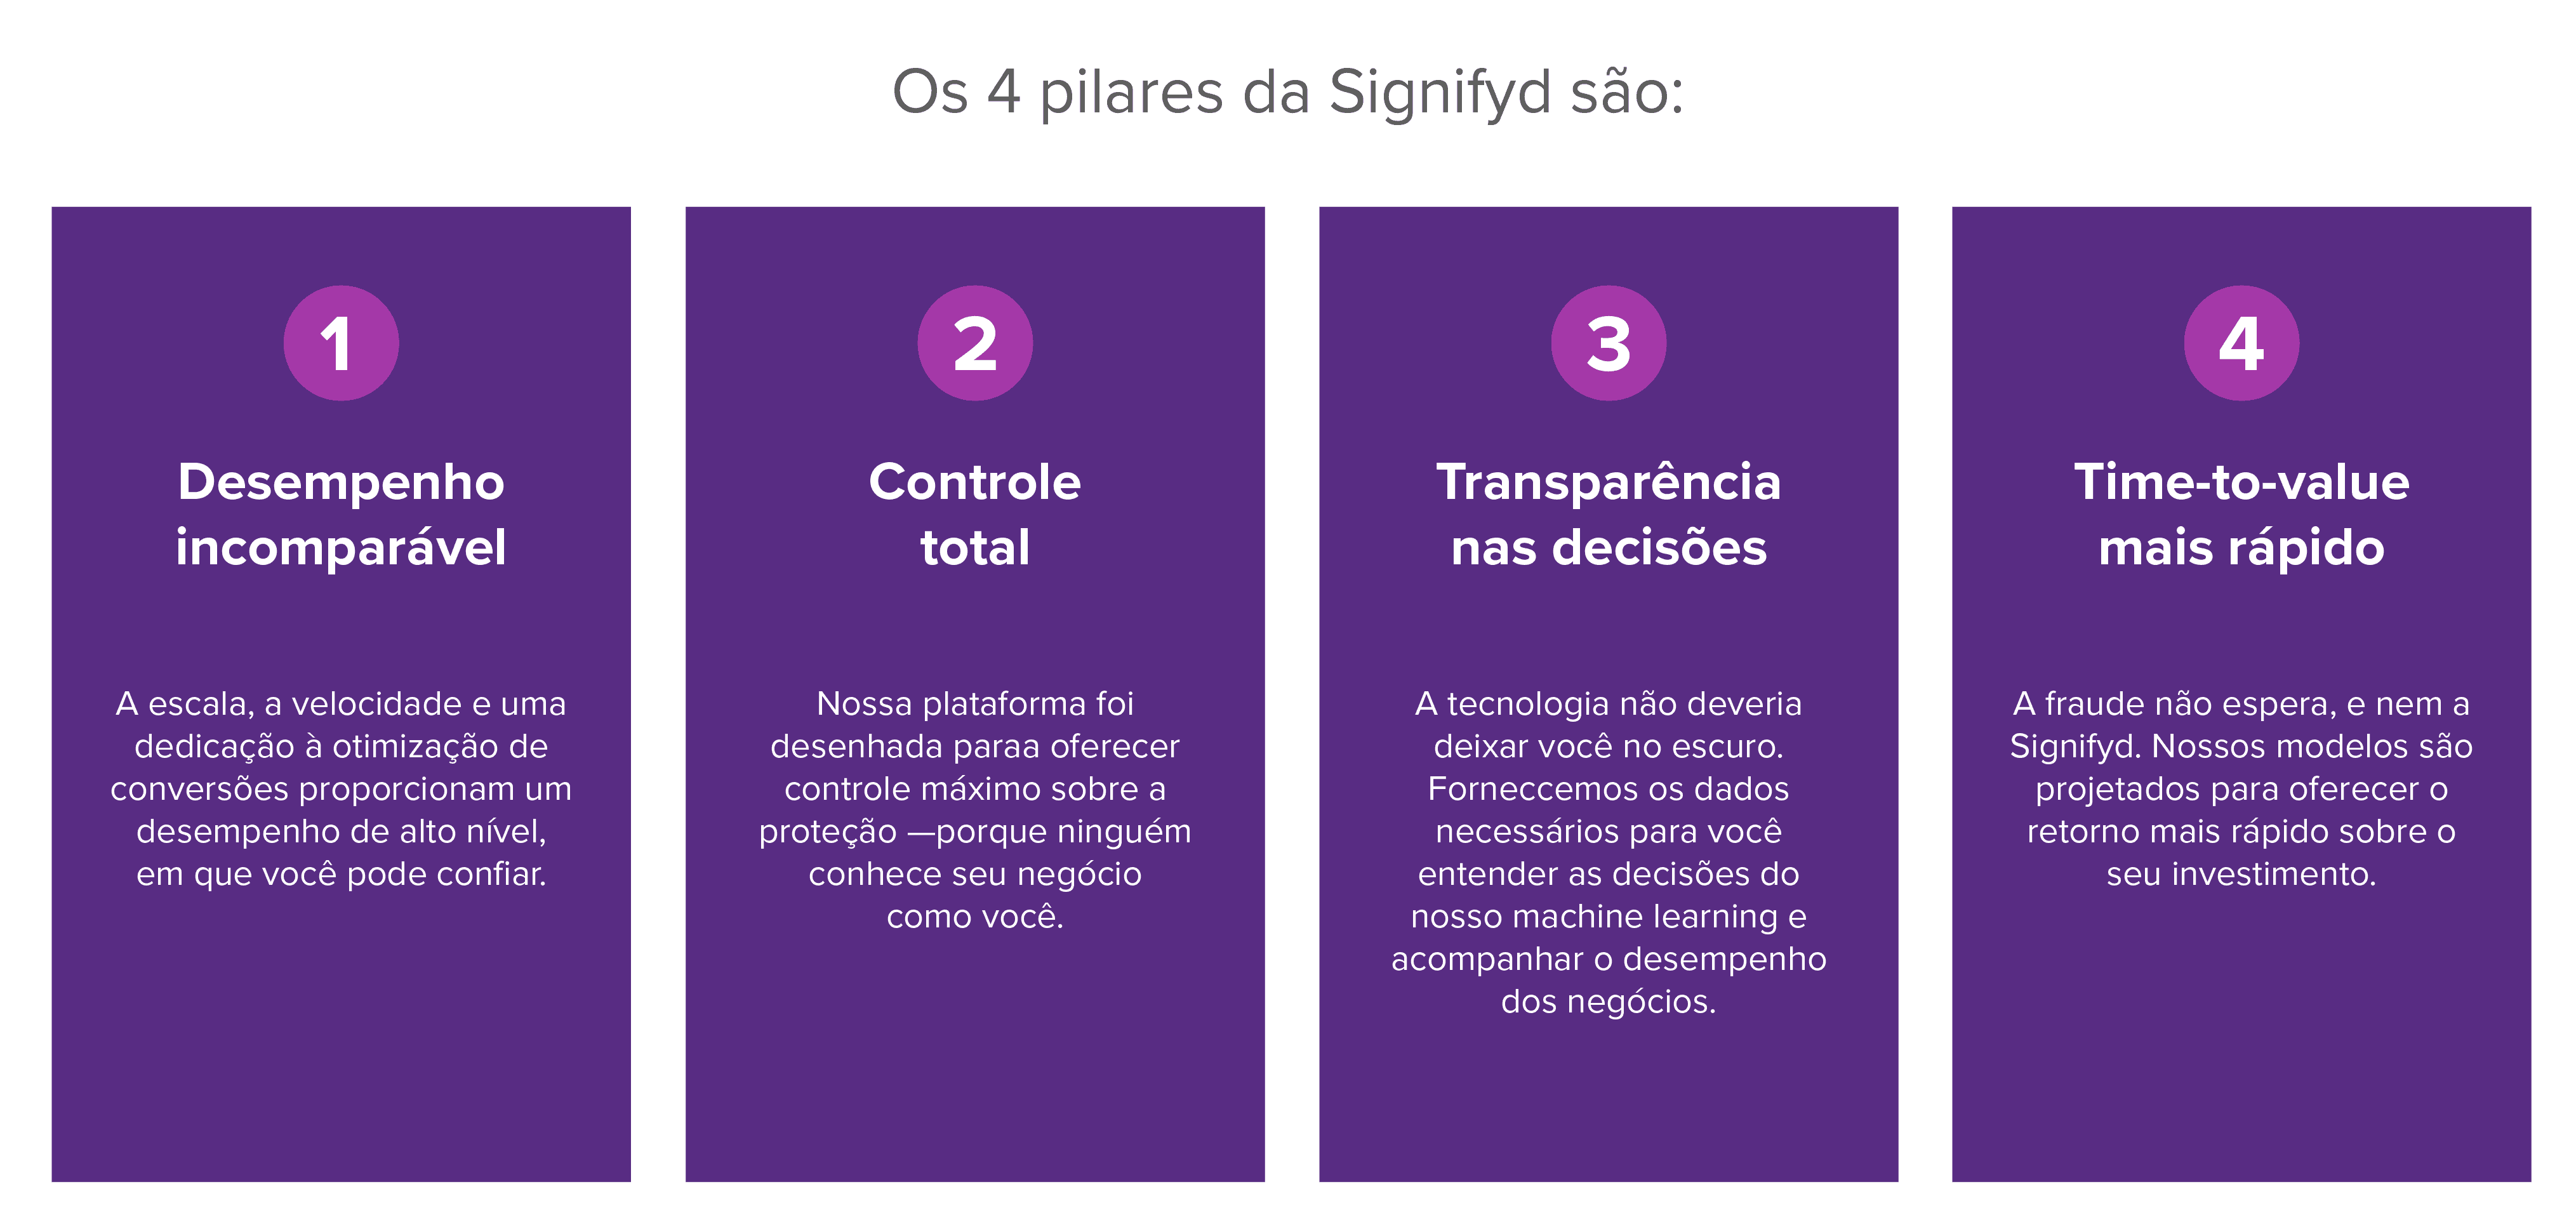 Os 4 pilares da Signifyd são: desempenho incomparável, controle total, transparência nas decisões e time-to-value mais rápido